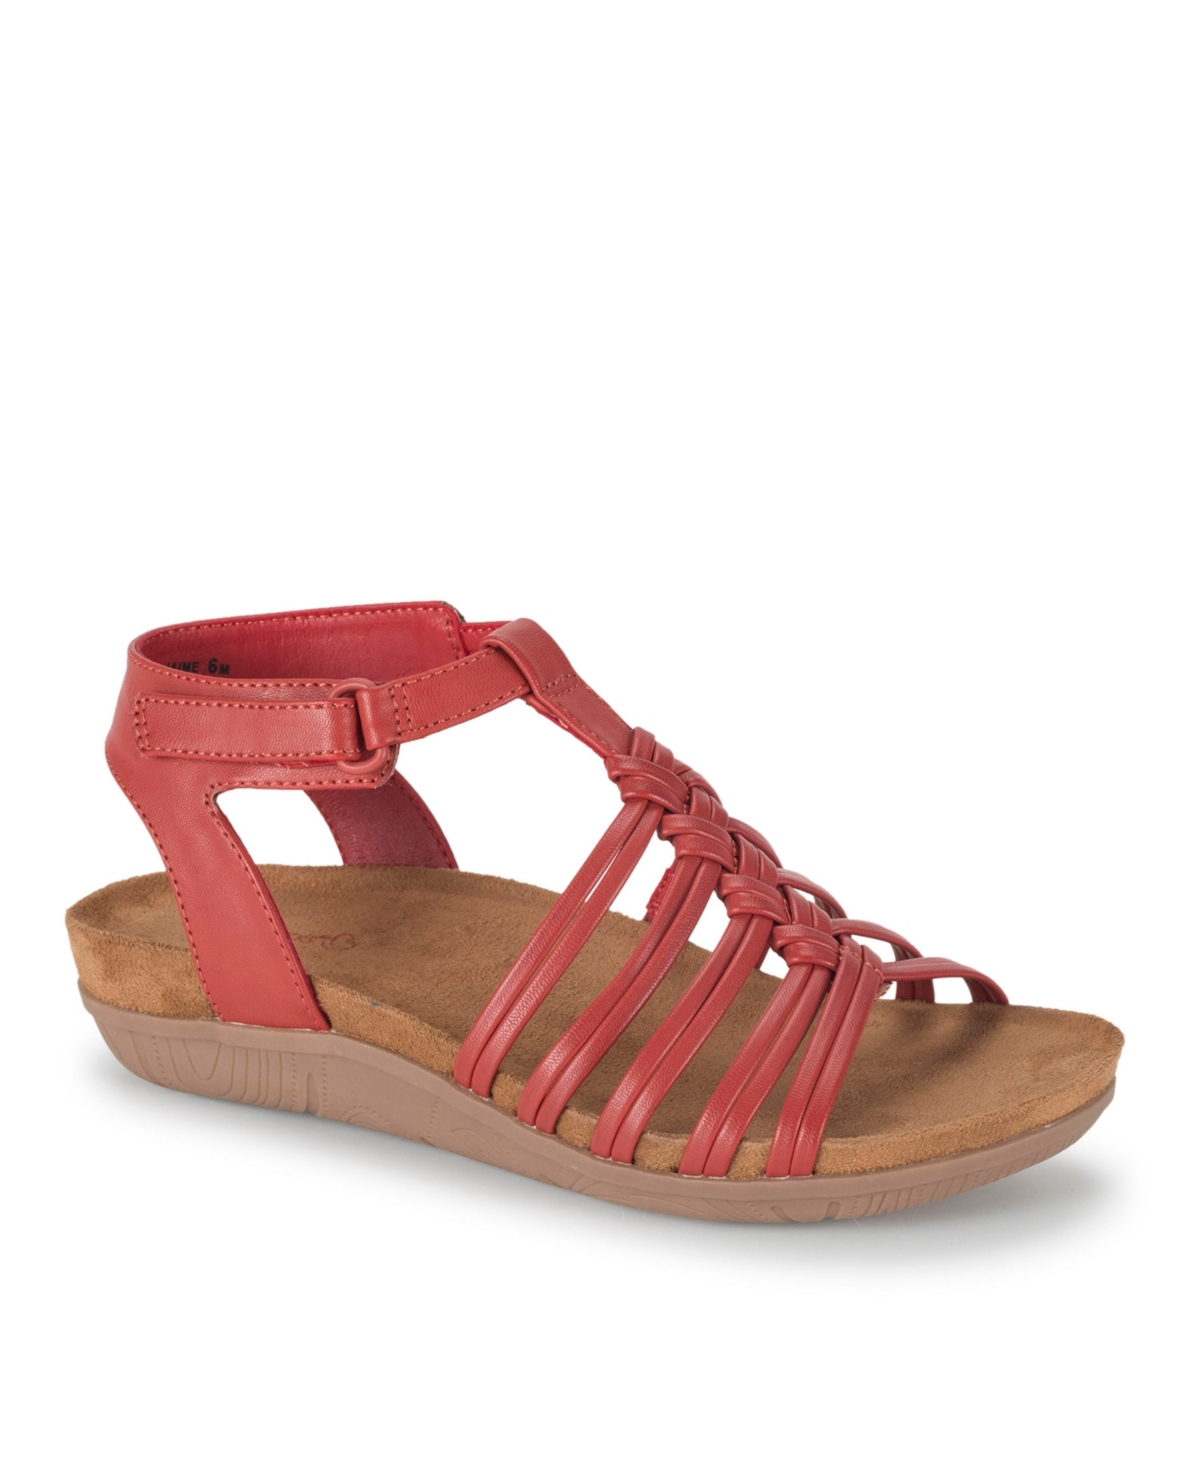 Baretraps Women's Jaime Wedge Sandals In Red